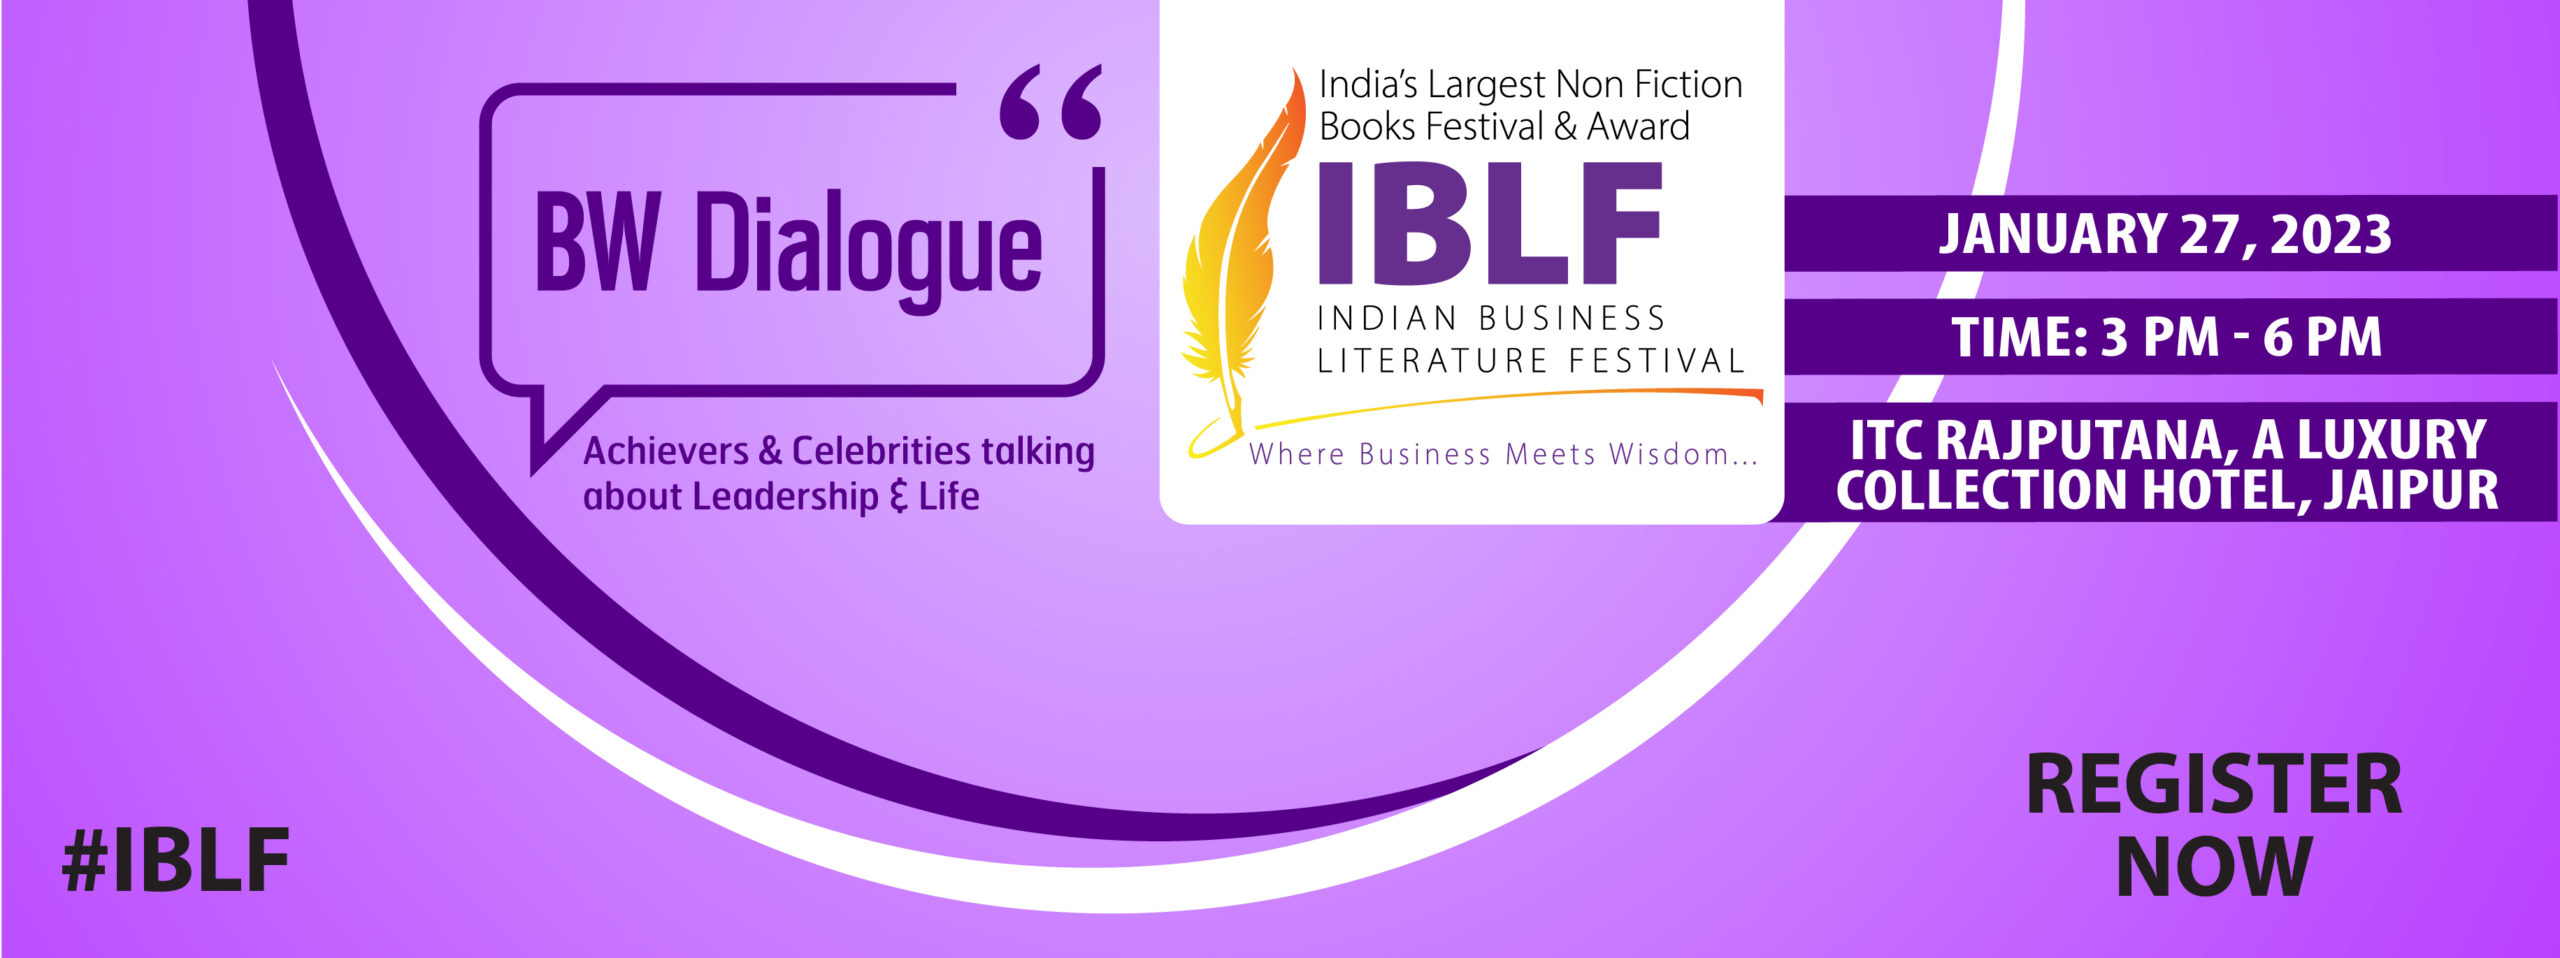 India Business Literature Festival - IBLF Jaipur